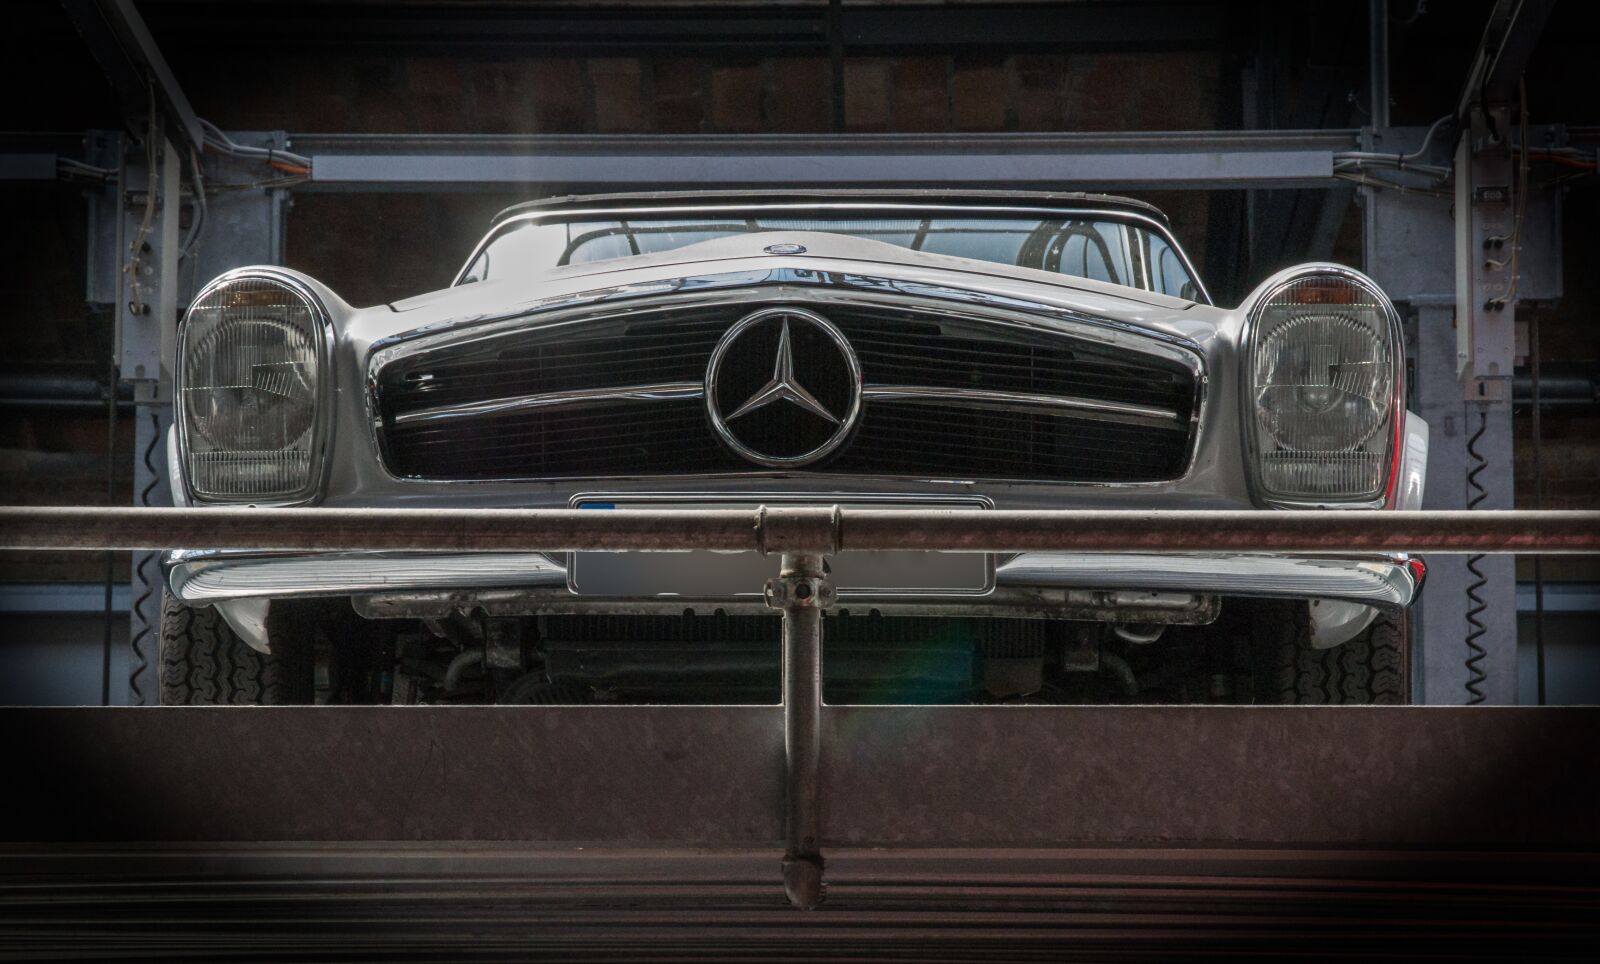 Pentax K-50 sample photo. Mercedes, cabriolet, oldtimer photography